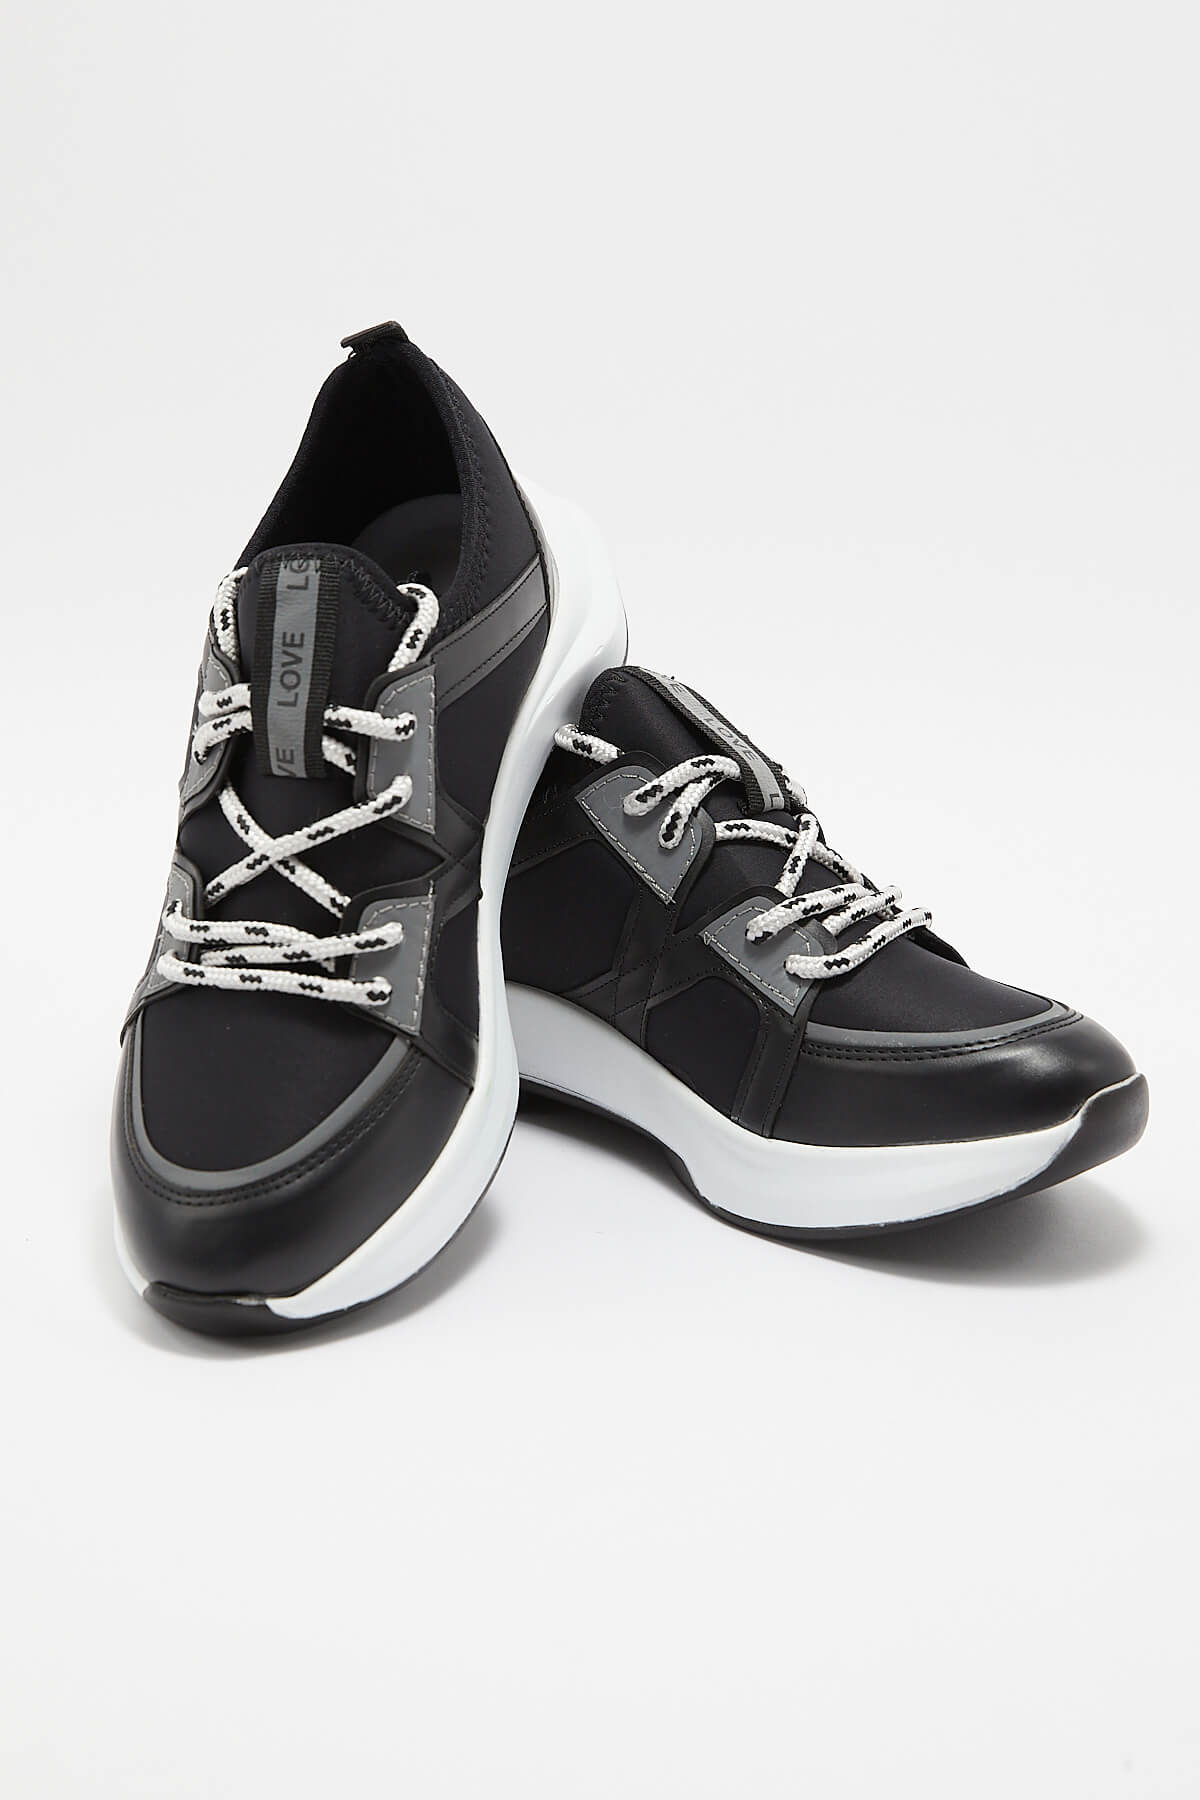 Kadın Deri Sneakers Siyah 2223604Y - Thumbnail